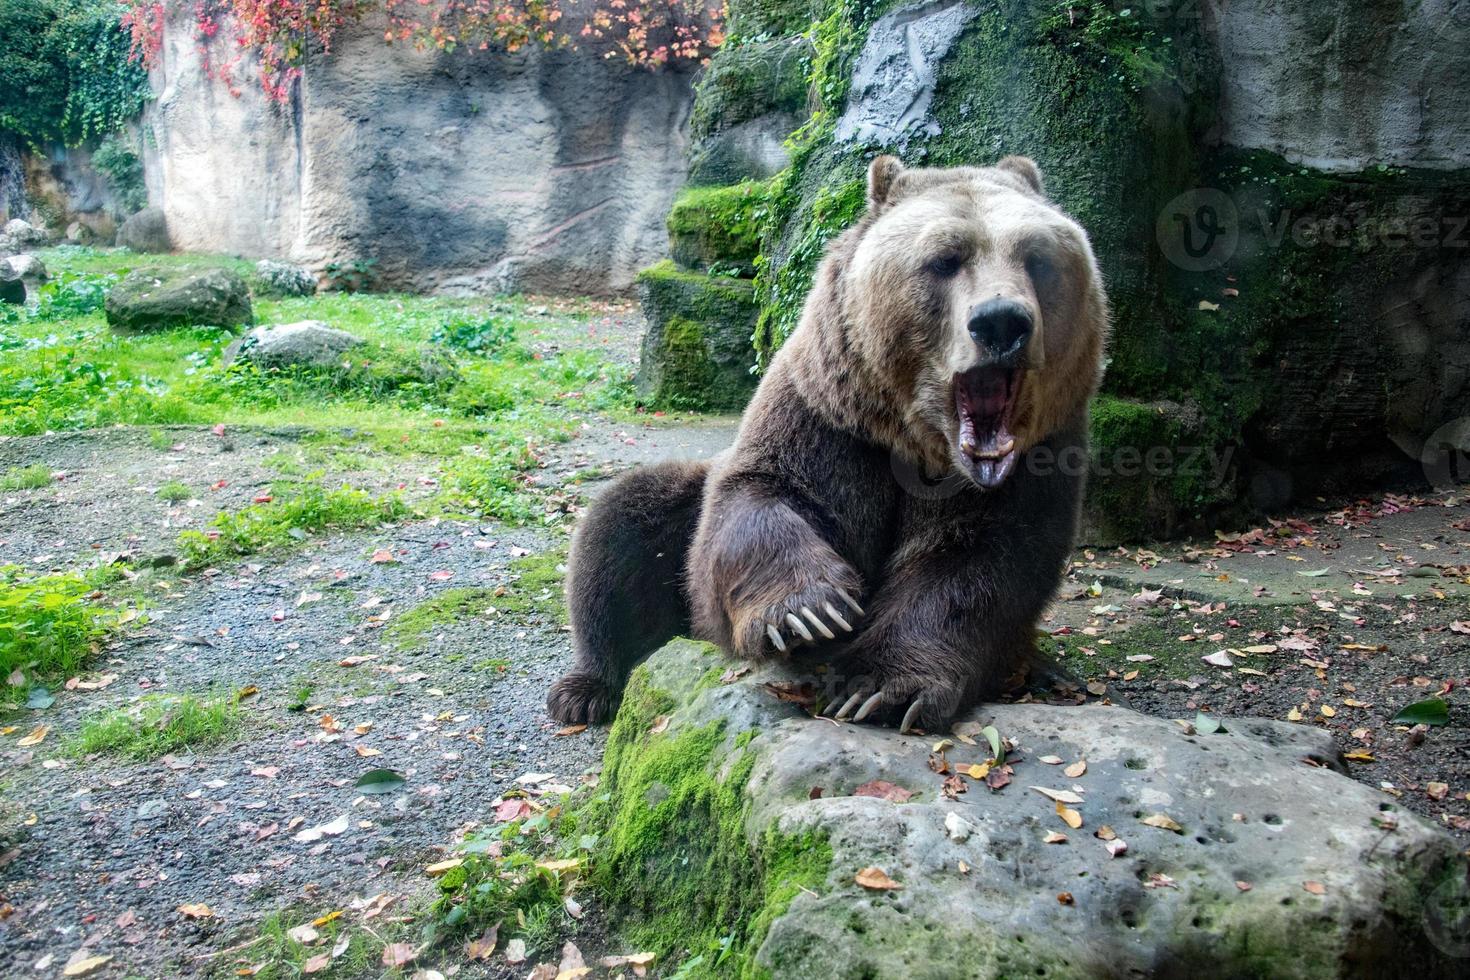 oso pardo grizzly en el fondo del bosque foto